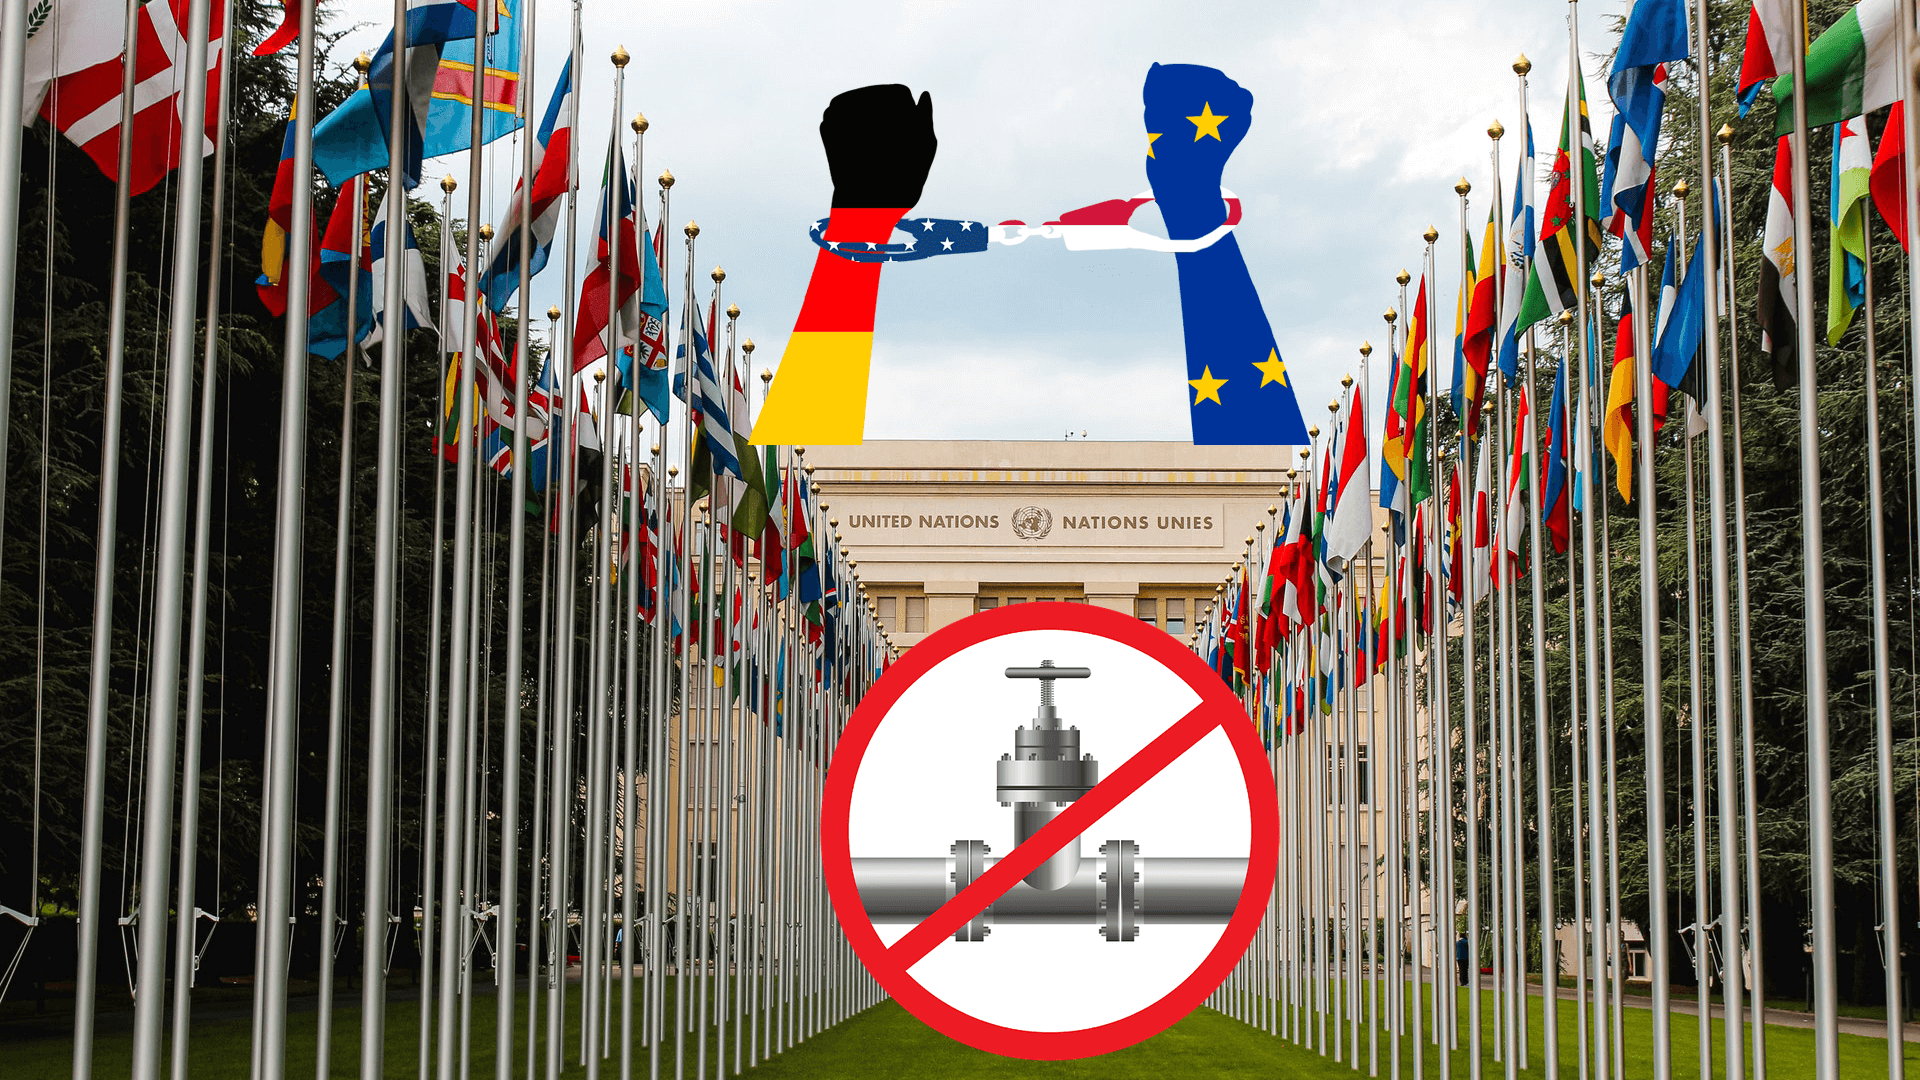 Kampf um Sanktionen, Deutschland und Europa am Ende?